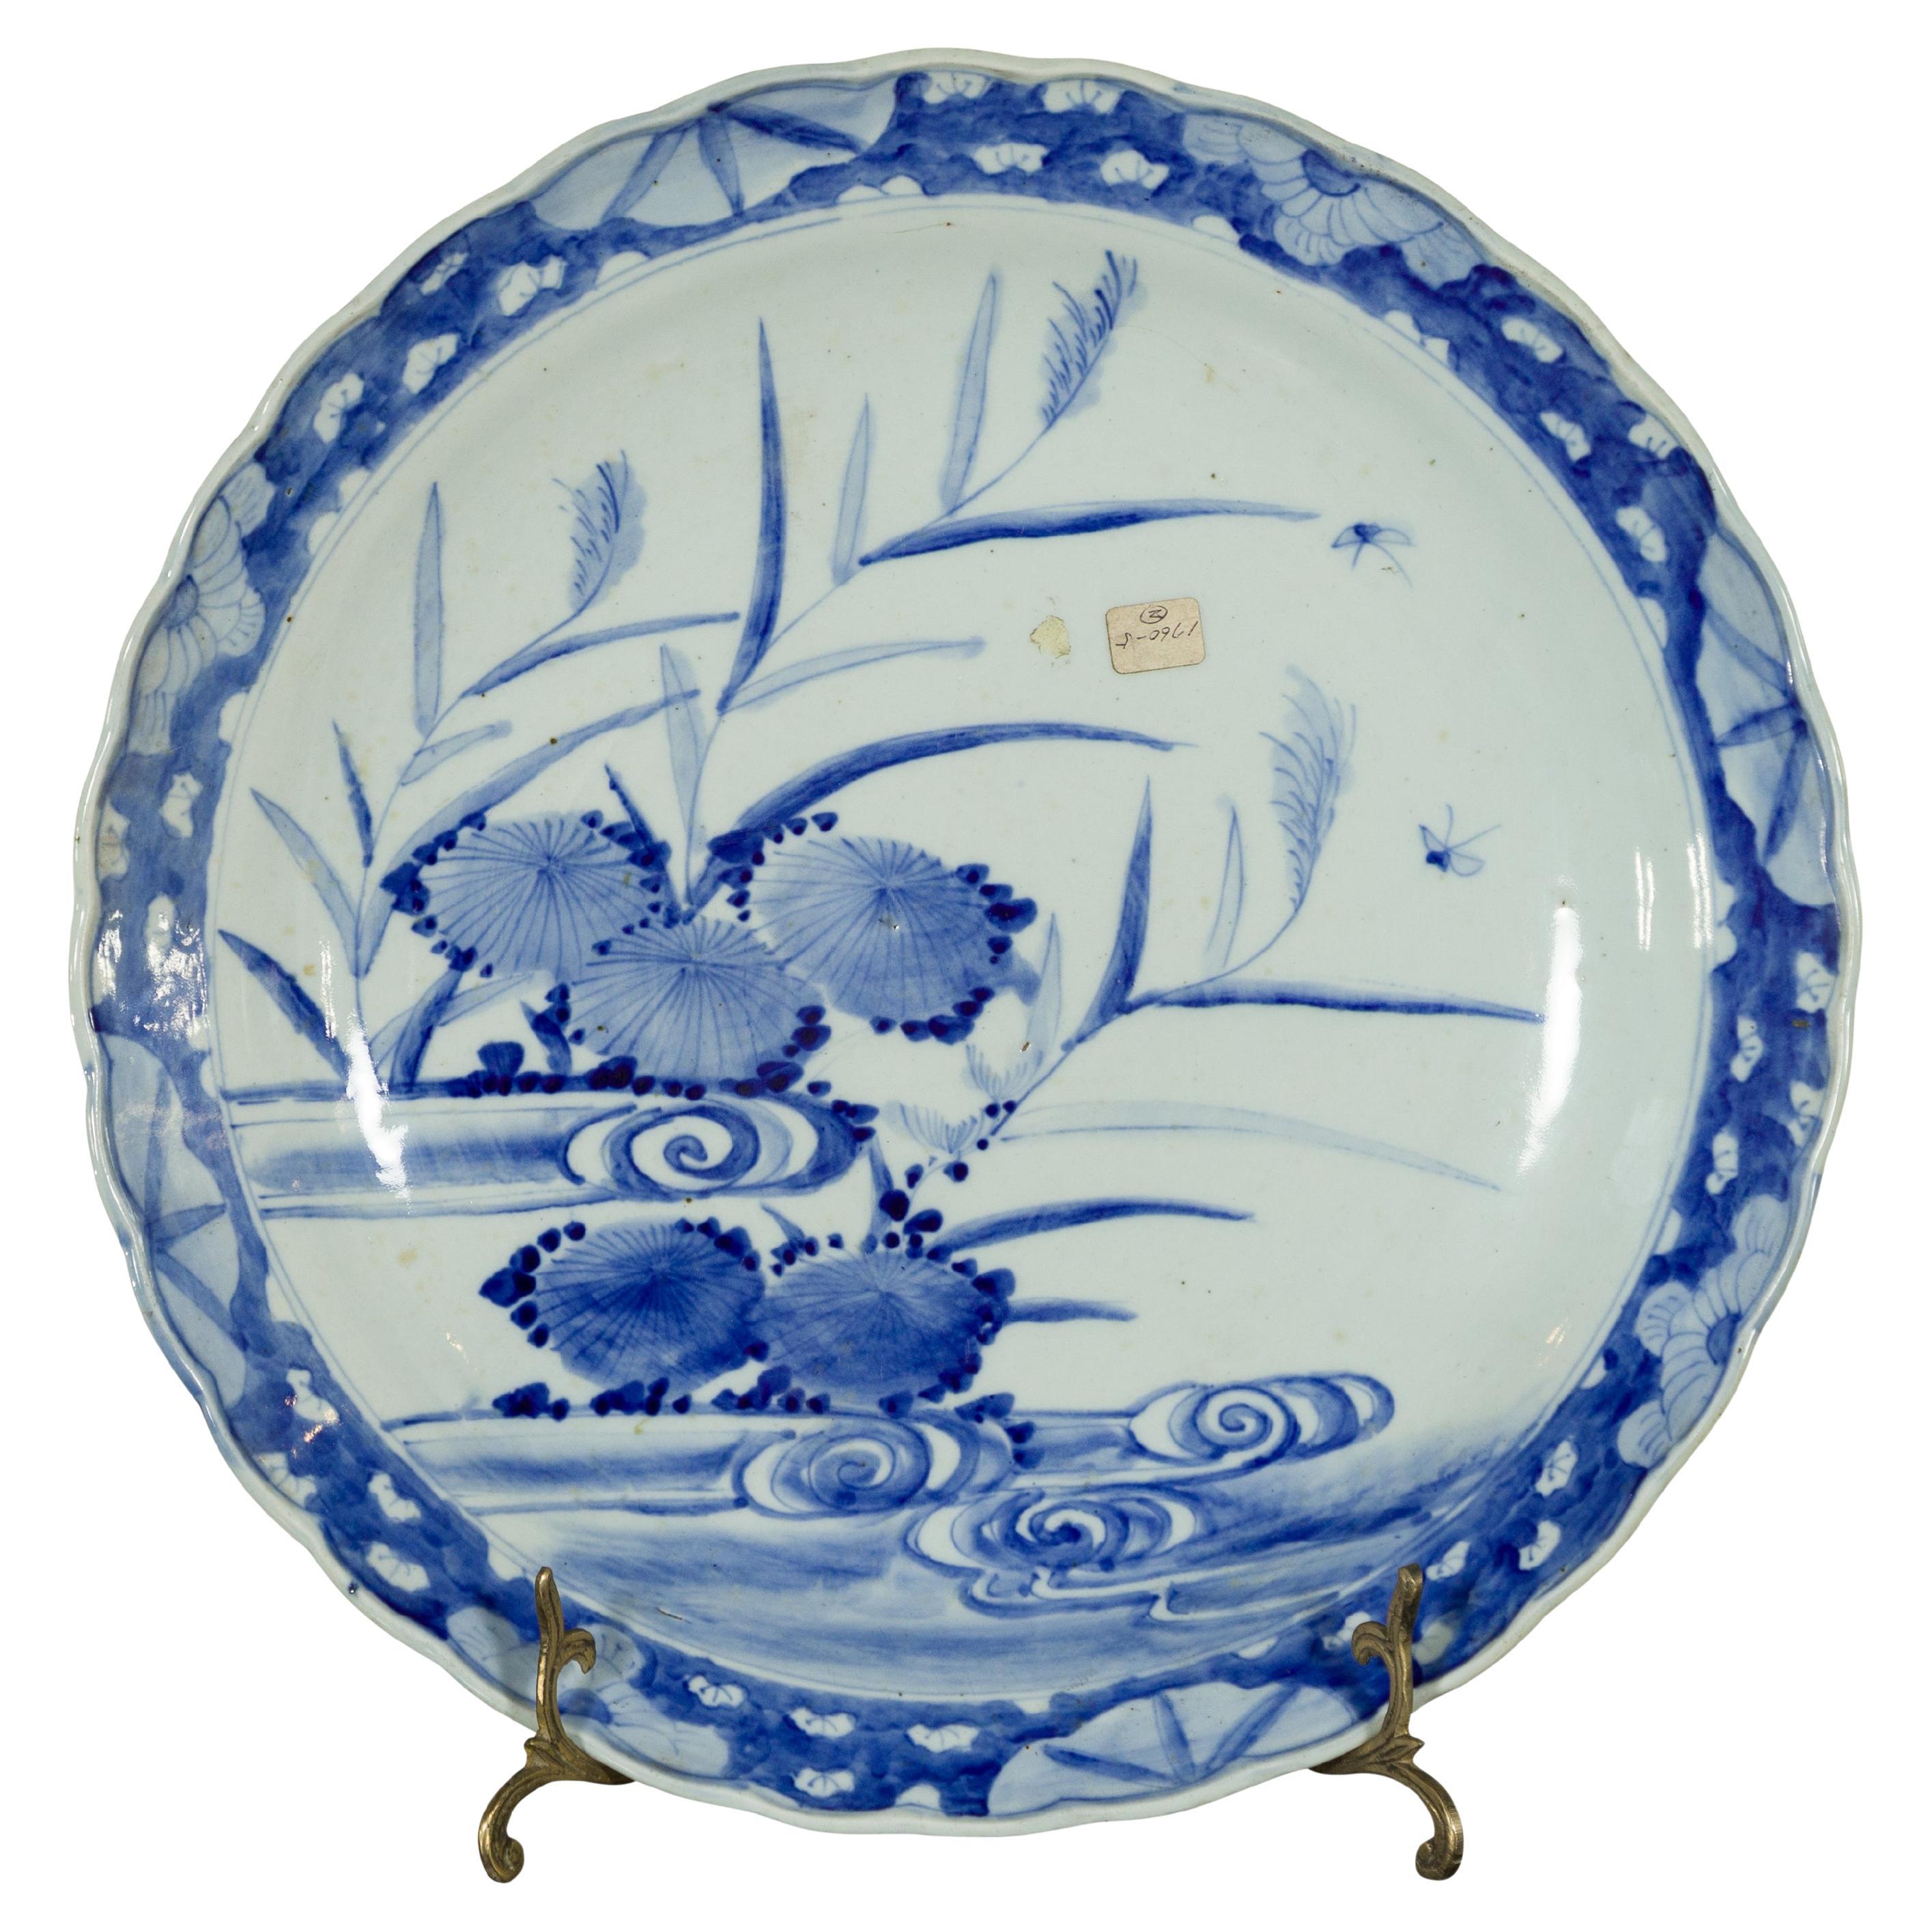 Japanischer Imari-Porzellanteller des 19. Jahrhunderts mit blau-weißer Bemalung